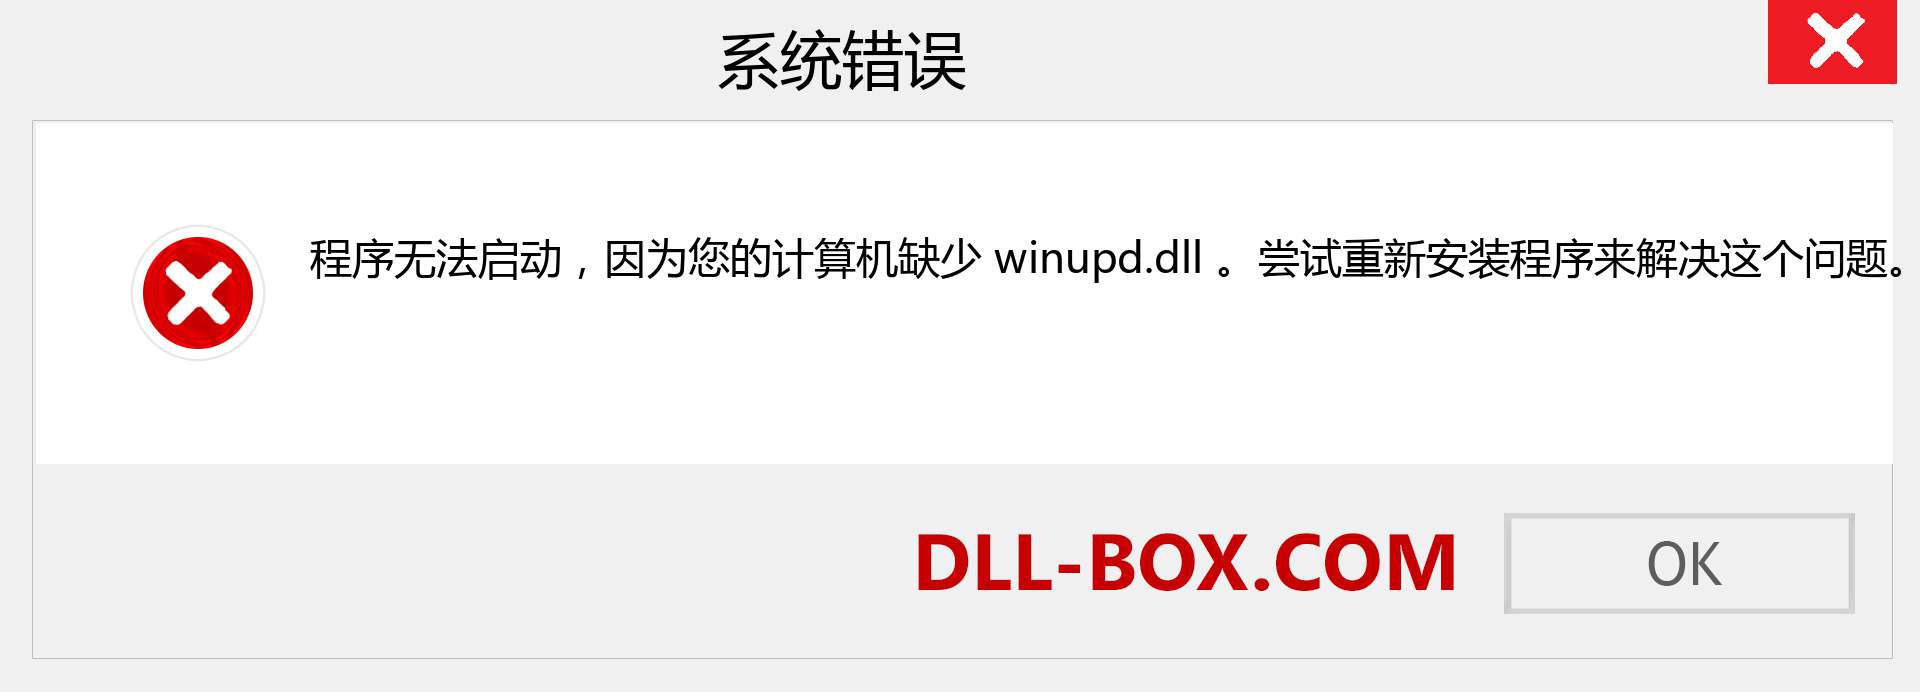 winupd.dll 文件丢失？。 适用于 Windows 7、8、10 的下载 - 修复 Windows、照片、图像上的 winupd dll 丢失错误